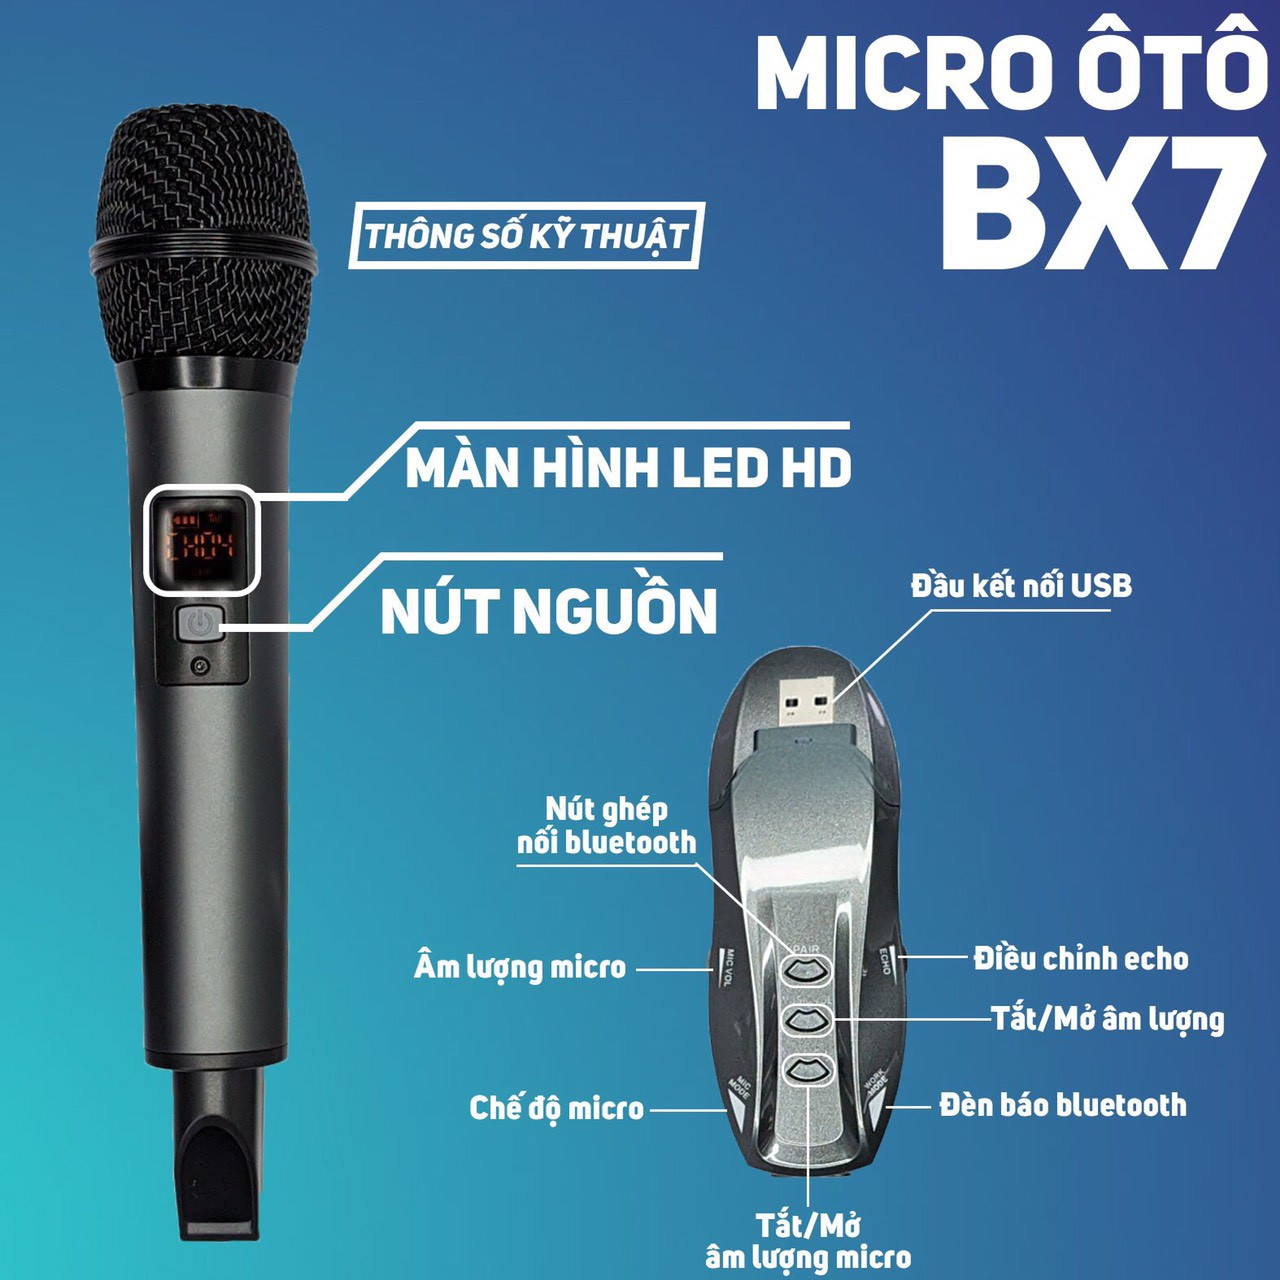 Bộ 2 Micro Karaoke Cho Ô Tô BX7 Cao Cấp - Micro Không Dây Đa Năng Hát Trên Ô Tô -  Mic Hát Trên Xe Hơi - Micro Không Dây Hát Cho Ô Tô Cực Hay - Độ Nhạy Cao - Chống Hú Tốt - Kết  Nối Đa Dạng Với Ô Tô, Tivi, Loa BlueTooth, Mixer, Amply...